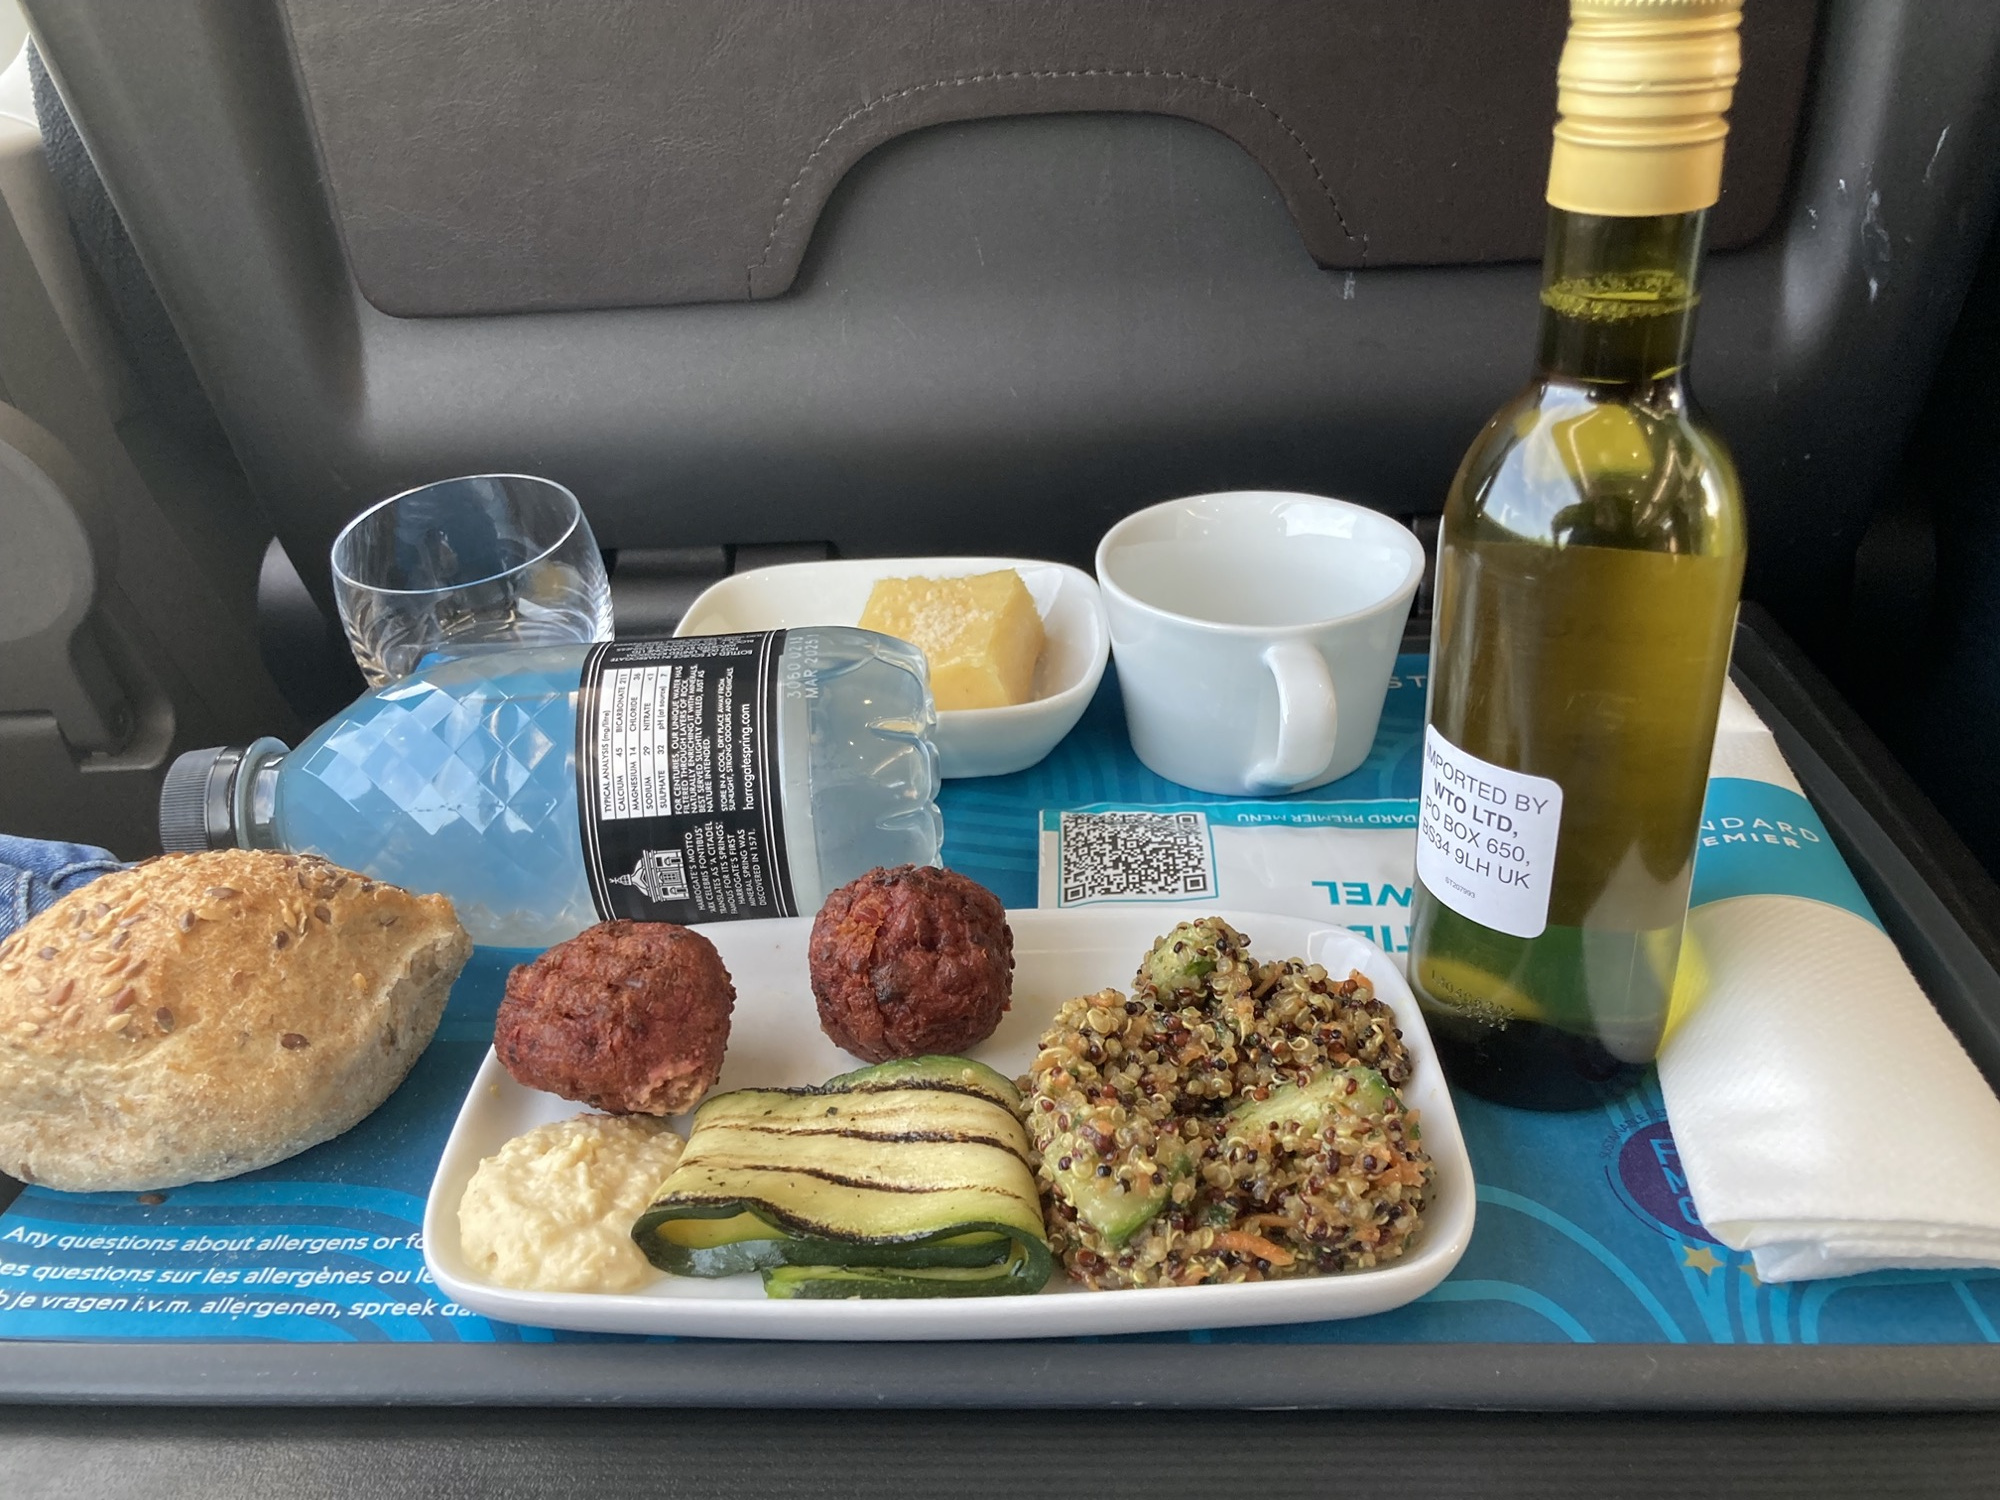 Tablett mit Verpflegung im Eurostar, eine kleine Flasche Wasser, eine kleine Flasche Wein, ein Glas, ein Brötchen, ein Teller mit Falafel, Hummus, Zucchini und Quinoagemüse, eine kleine Schale mit einem Dessert